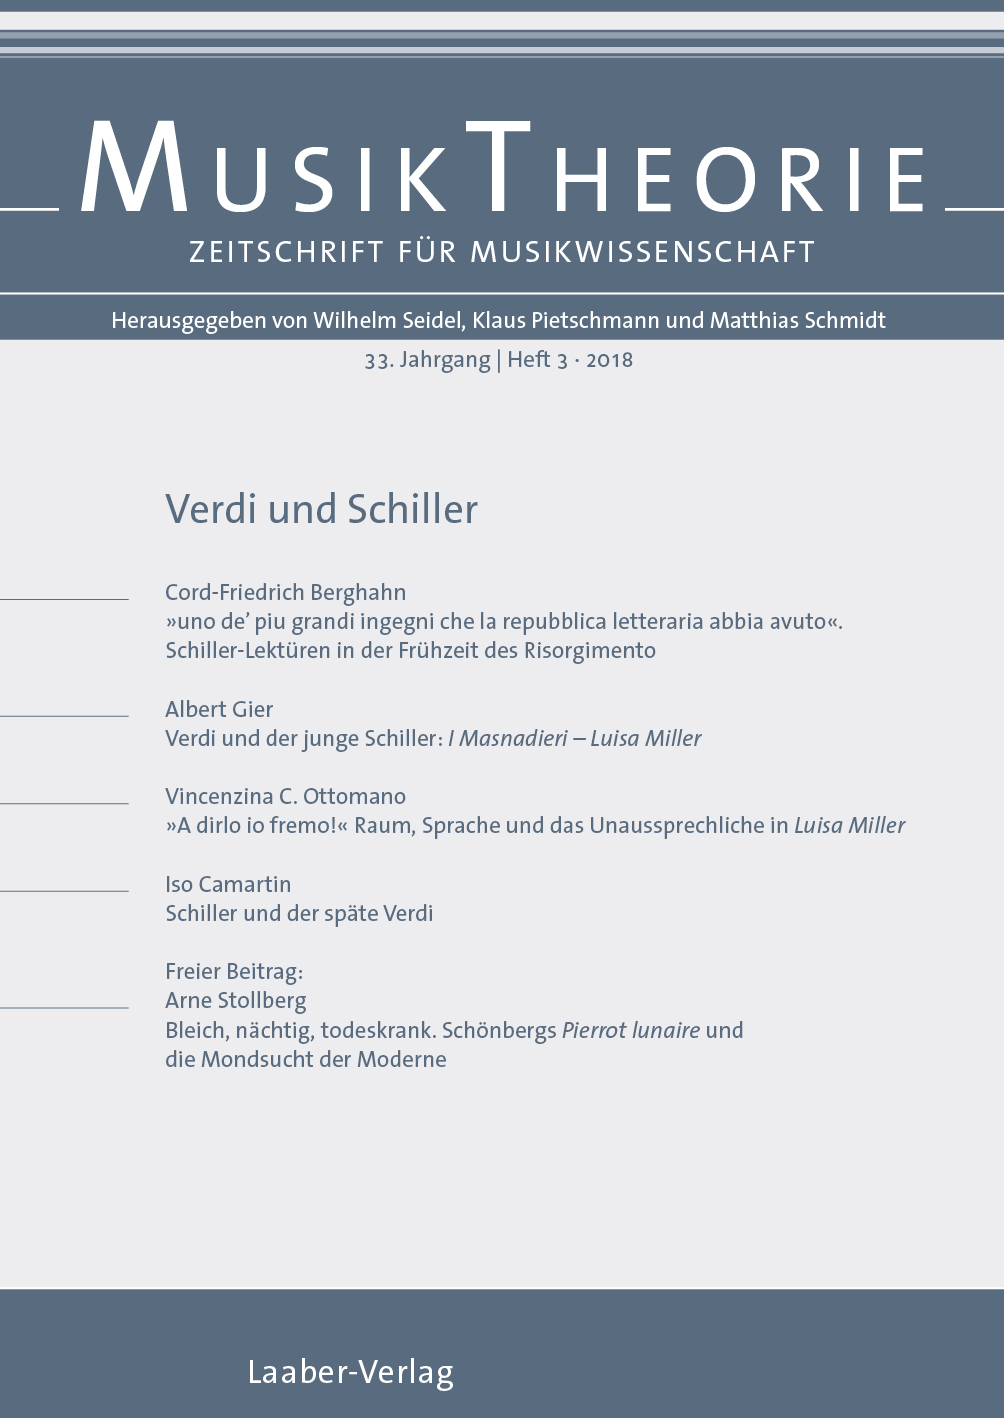 Musiktheorie Heft 3/2018